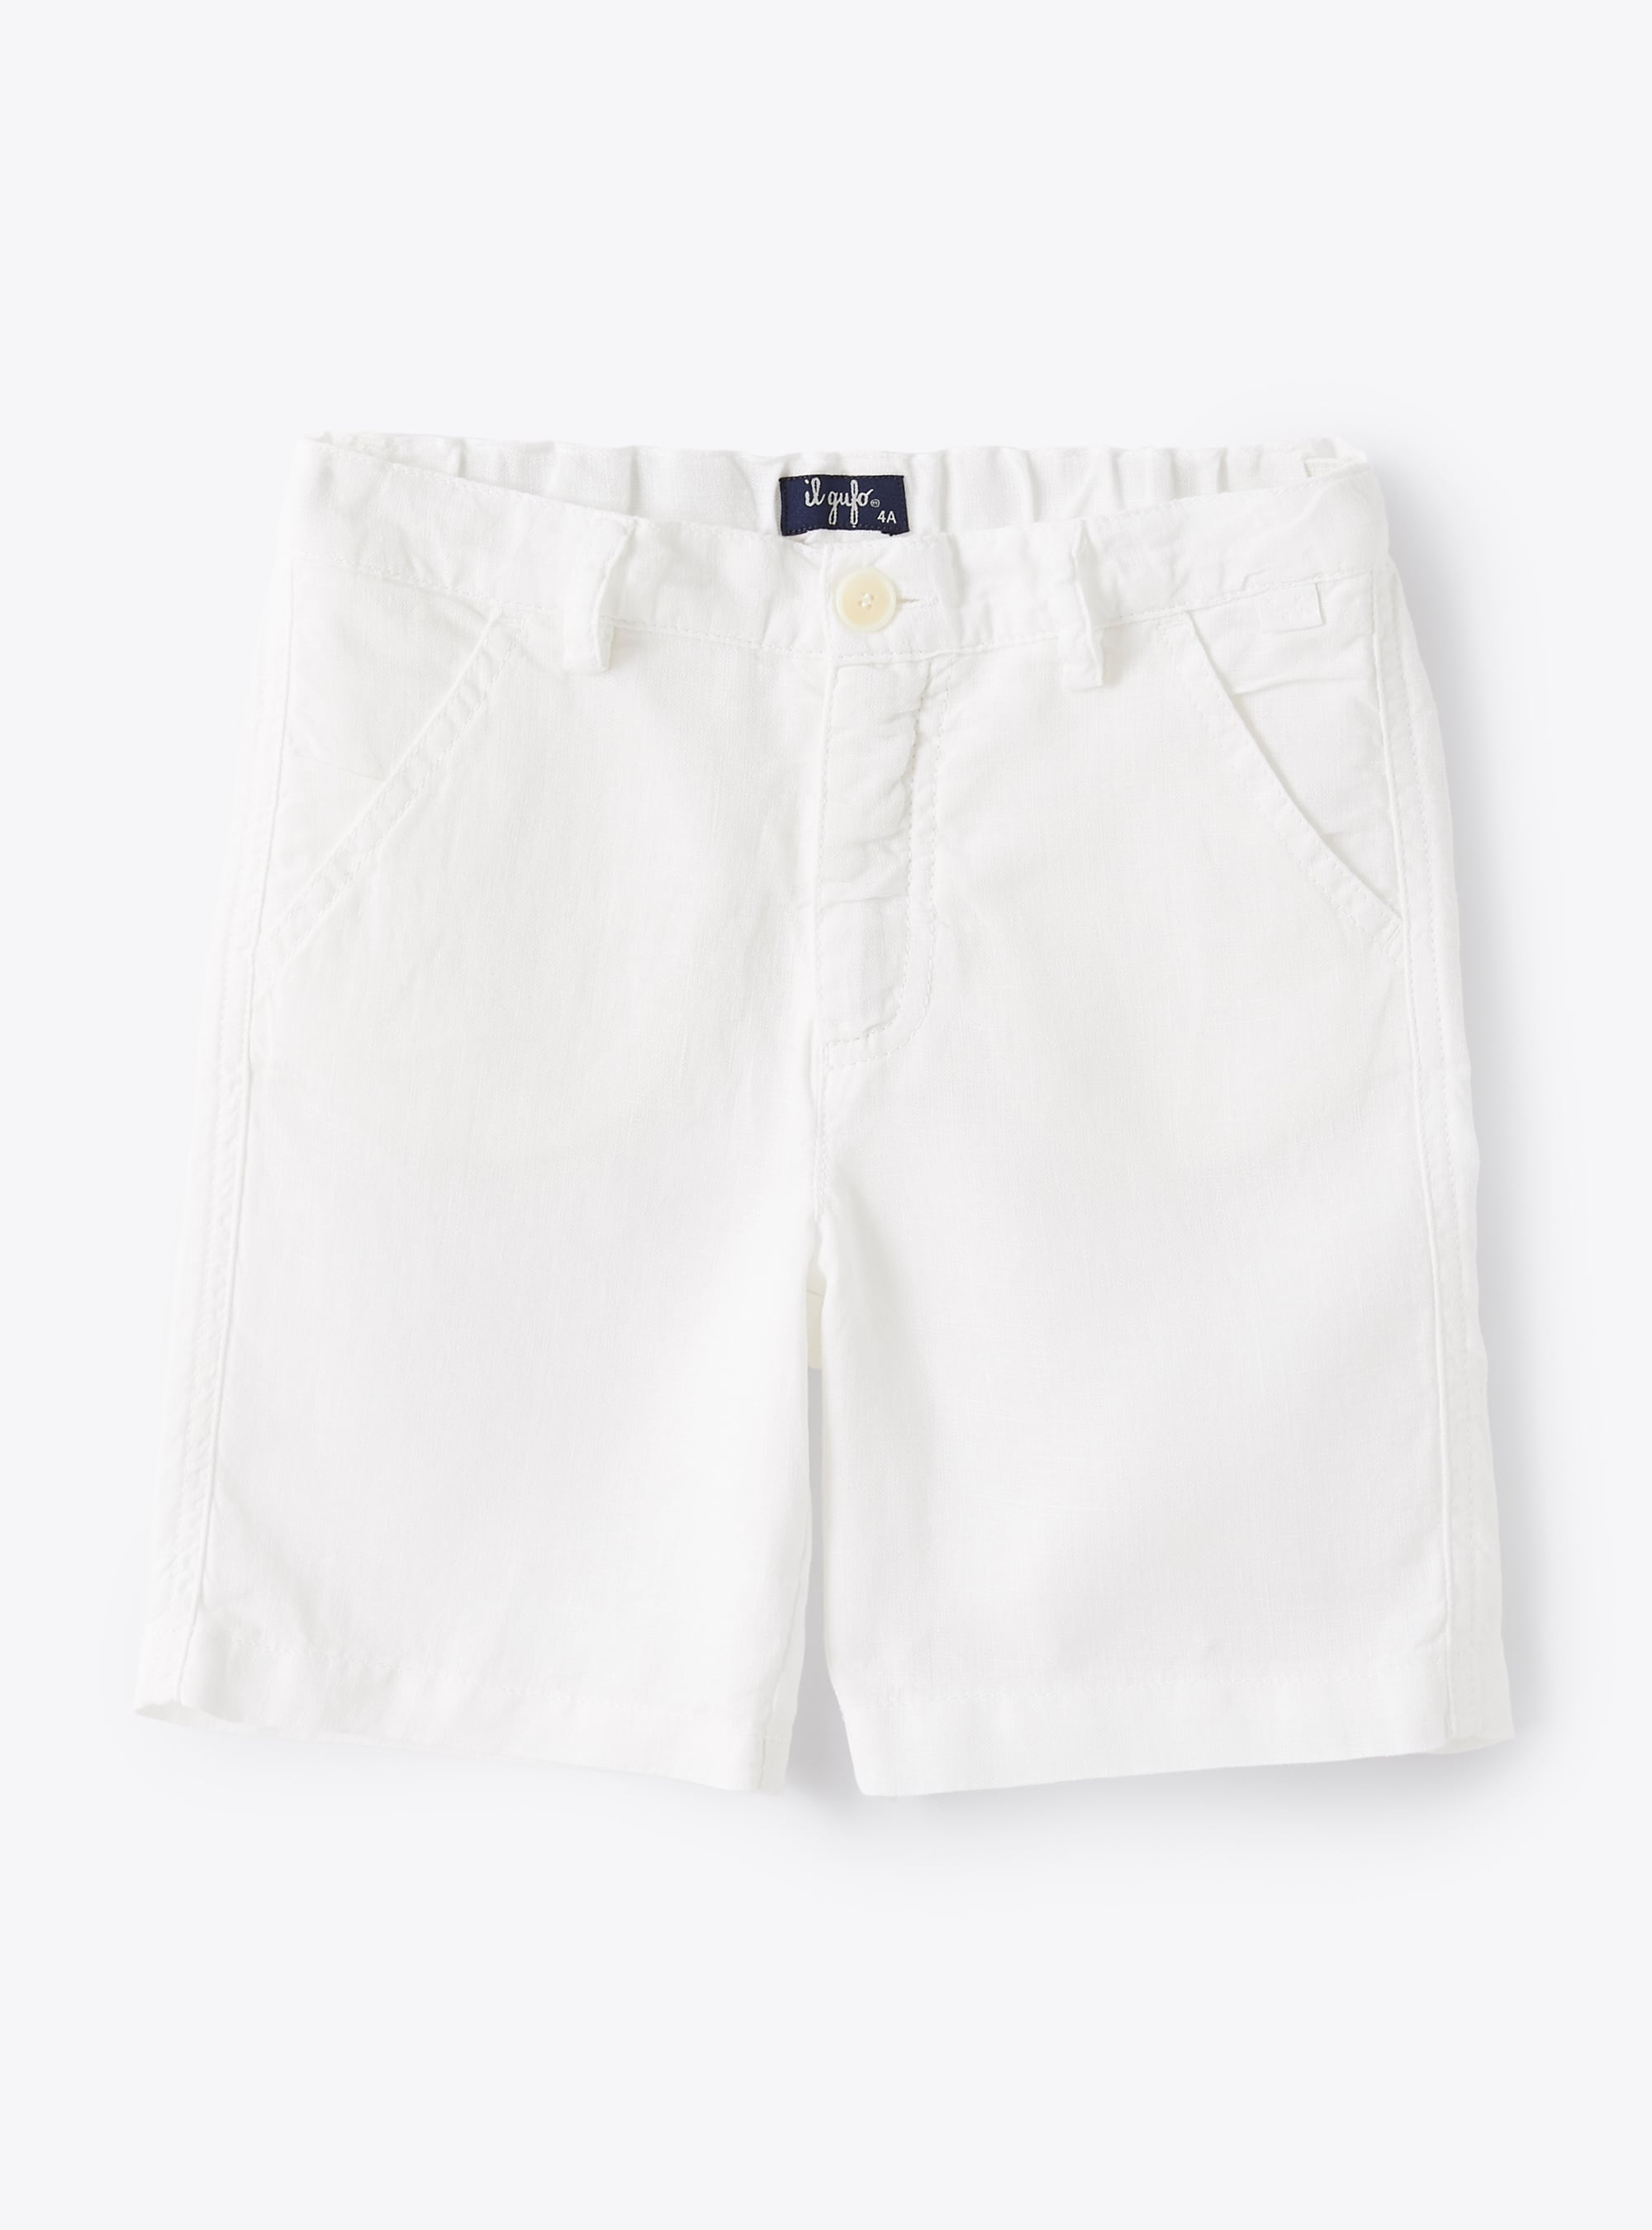 Bermuda shorts in white linen - White | Il Gufo